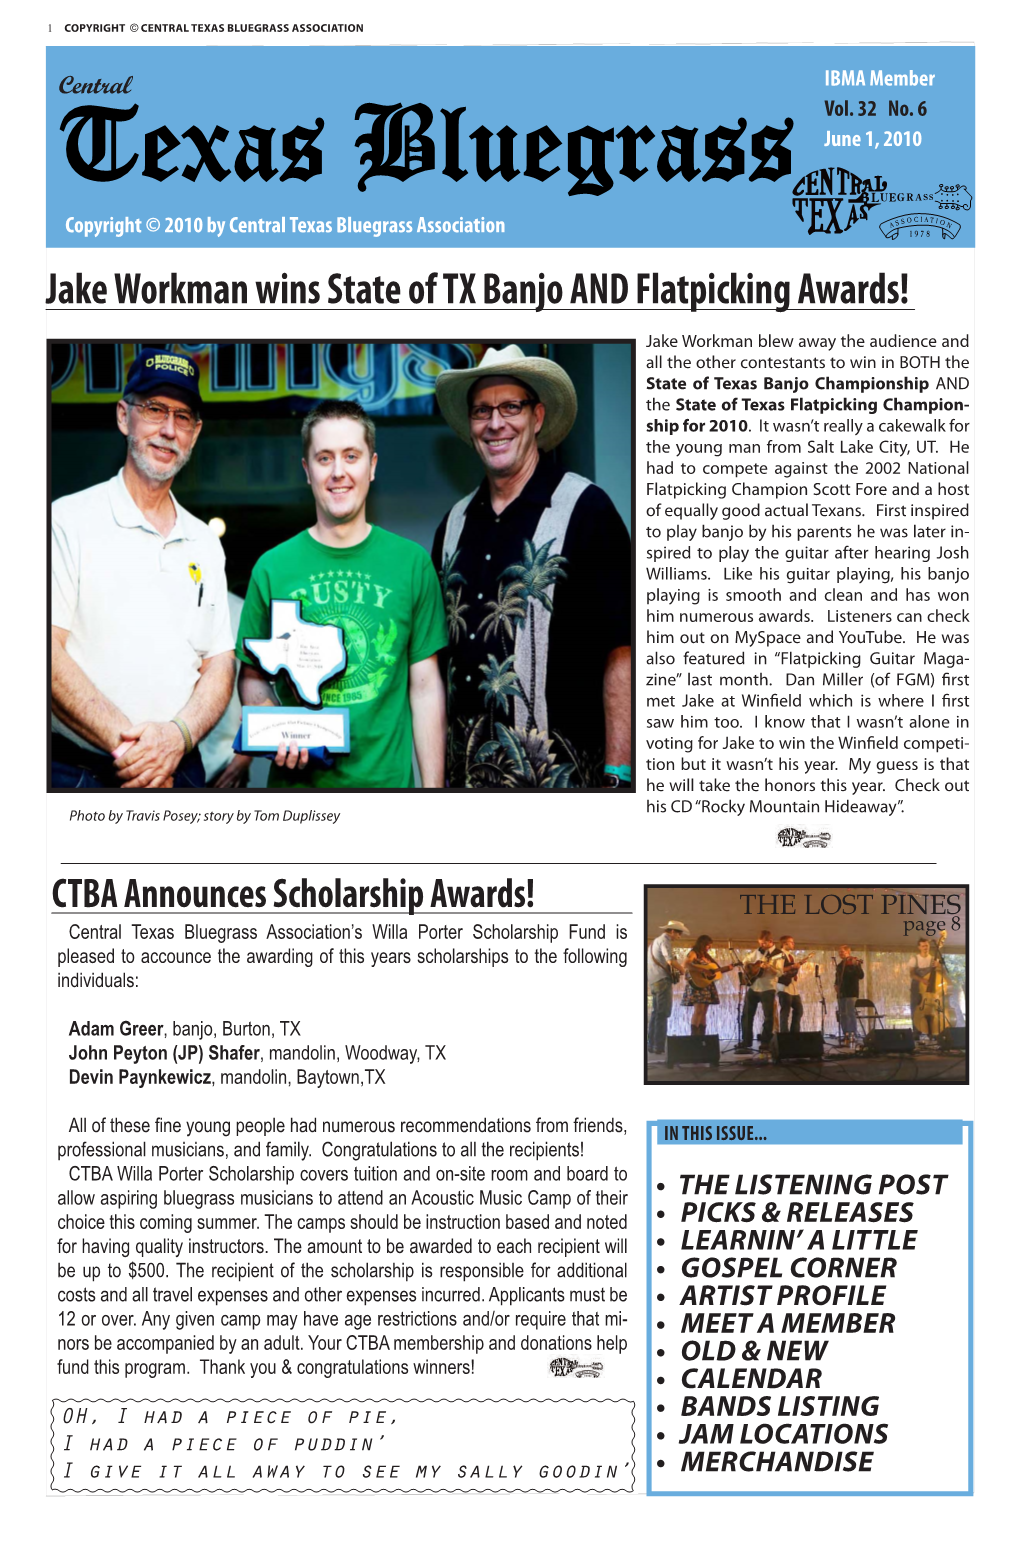 Jake Workman Wins State of TX Banjo and Flatpicking Awards!